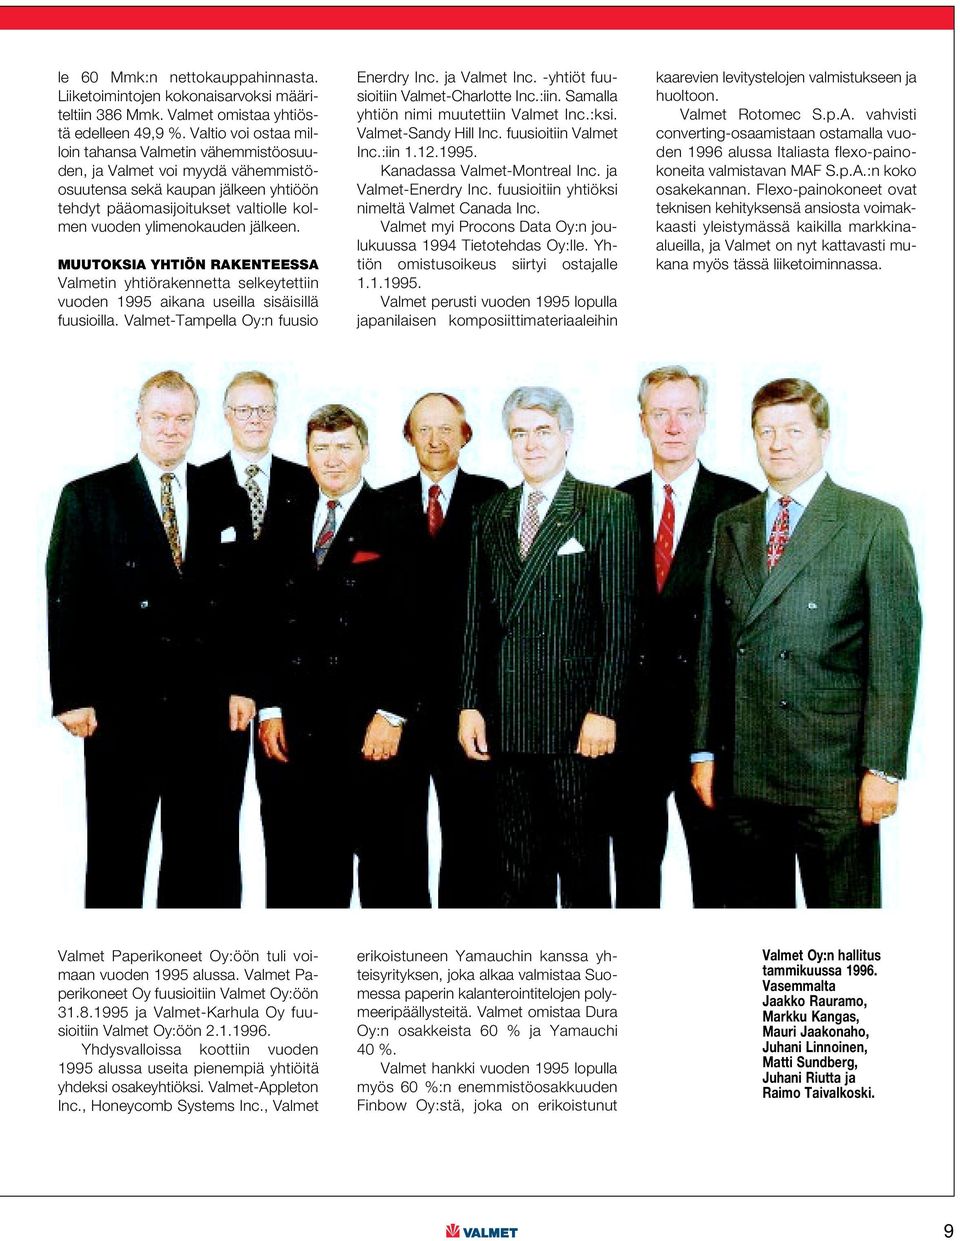 MUUTOKSIA YHTIÖN RAKENTEESSA Valmetin yhtiörakennetta selkeytettiin vuoden 1995 aikana useilla sisäisillä fuusioilla. Valmet-Tampella Oy:n fuusio Enerdry Inc. ja Valmet Inc.